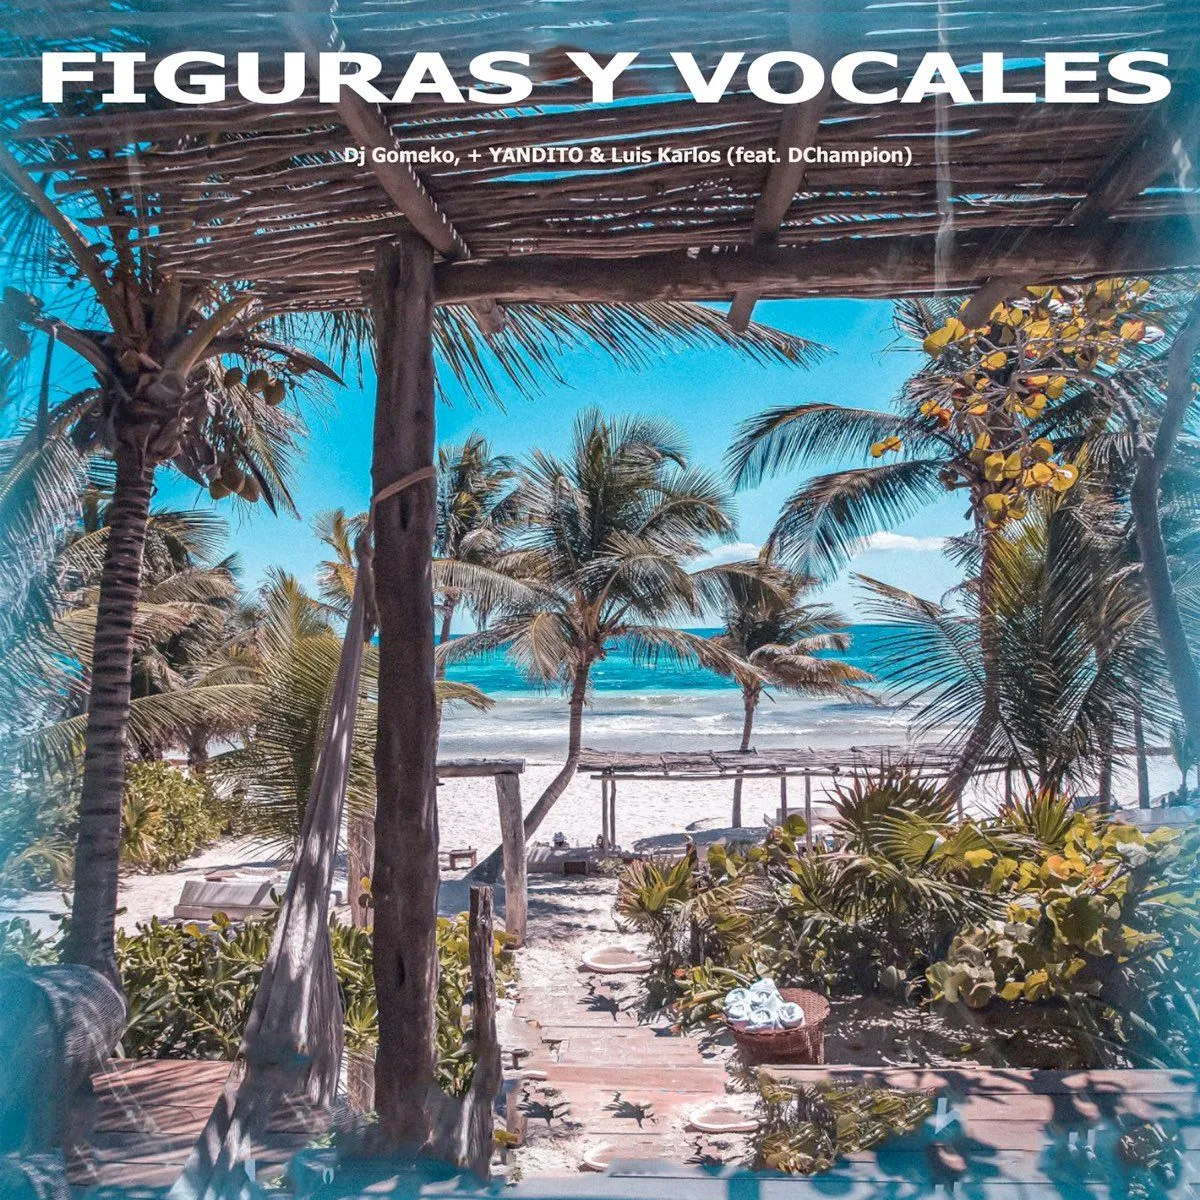 Figuras y Vocales (feat. DChampion) - Single - Album by Dj GoMeko, +  YANDITO & Luis Karlos - Apple Music